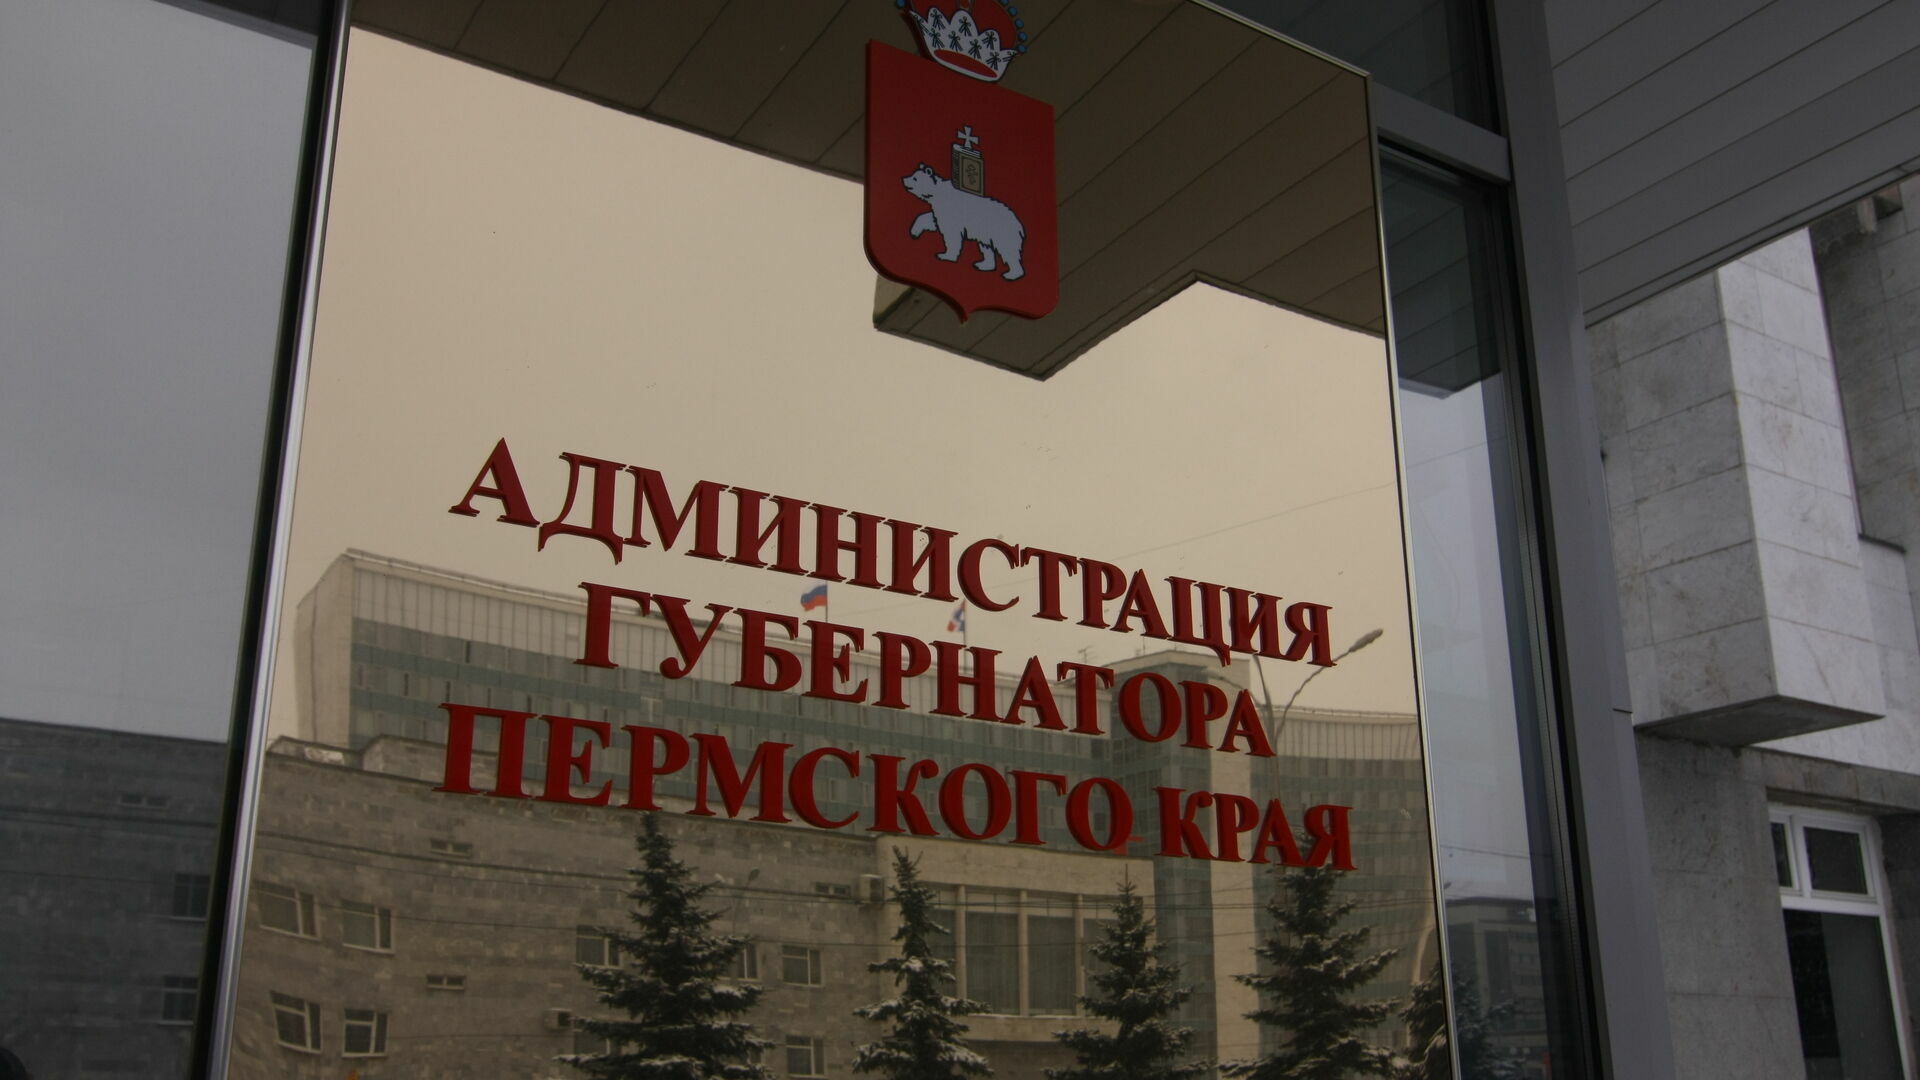 Администрация губернатора Прикамья выделила 4,8 миллиона рублей на пиар по телевизору